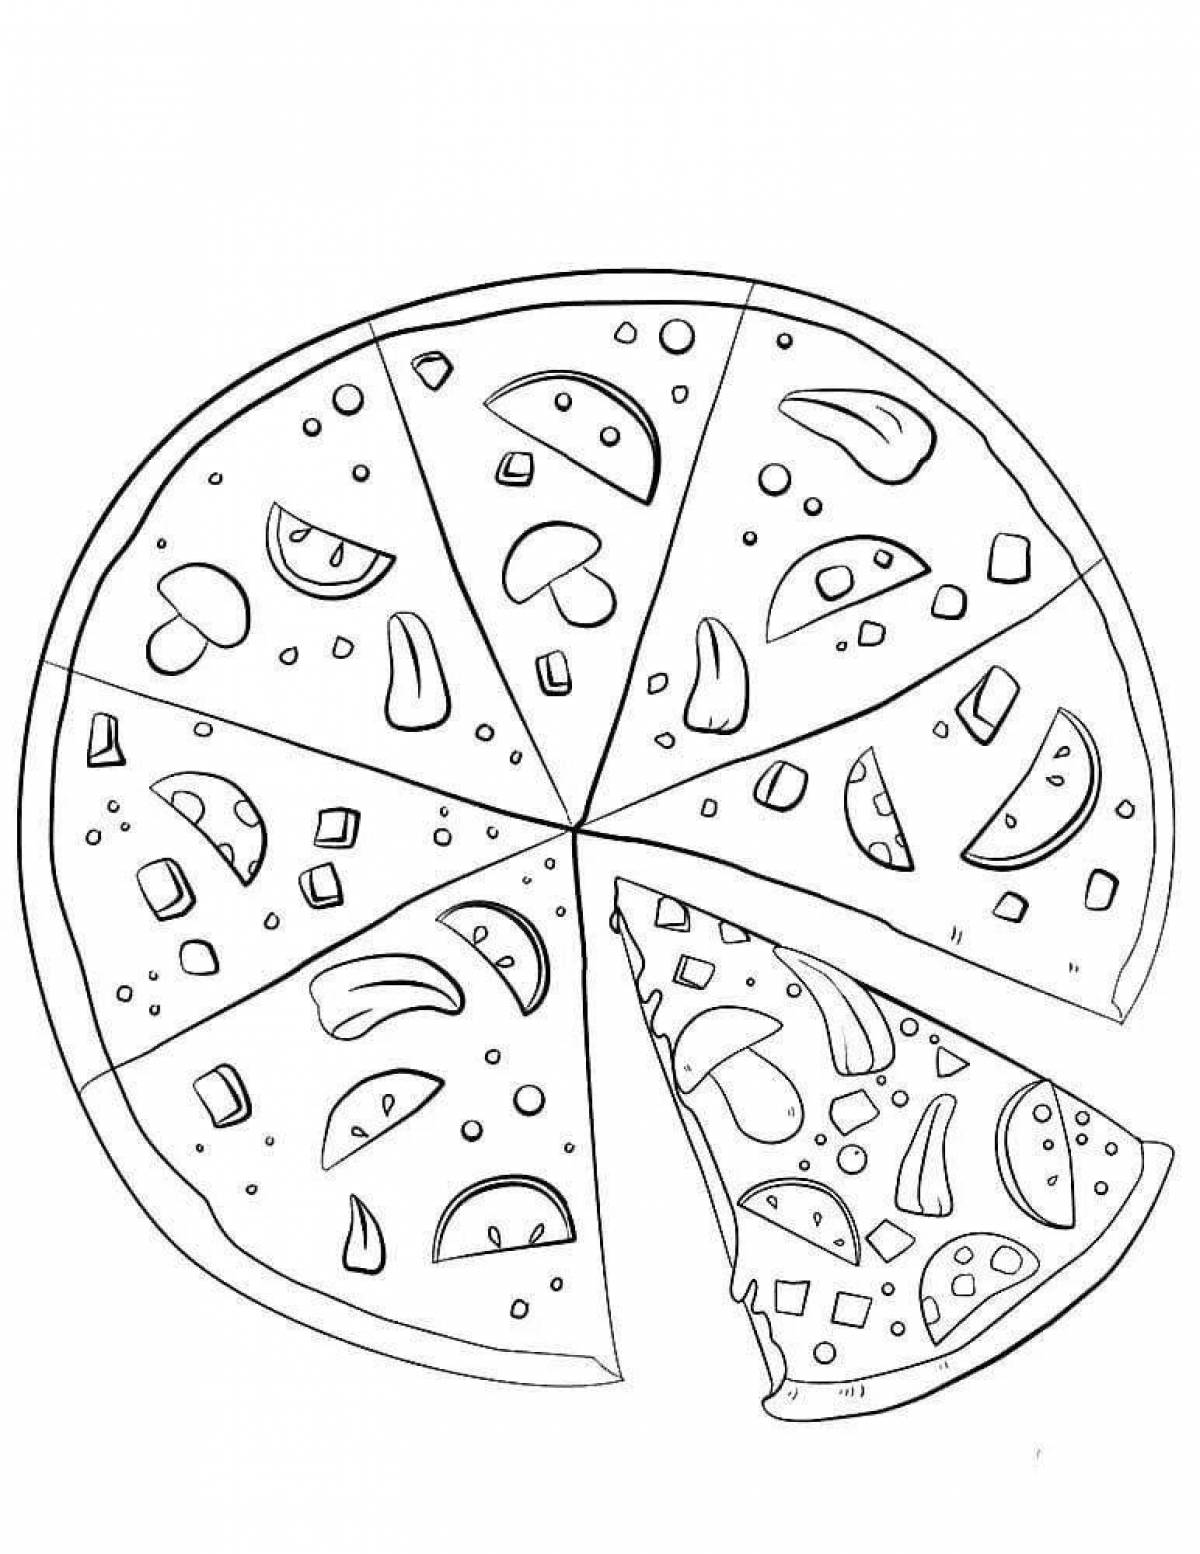 Delicious pizza slices color the picture